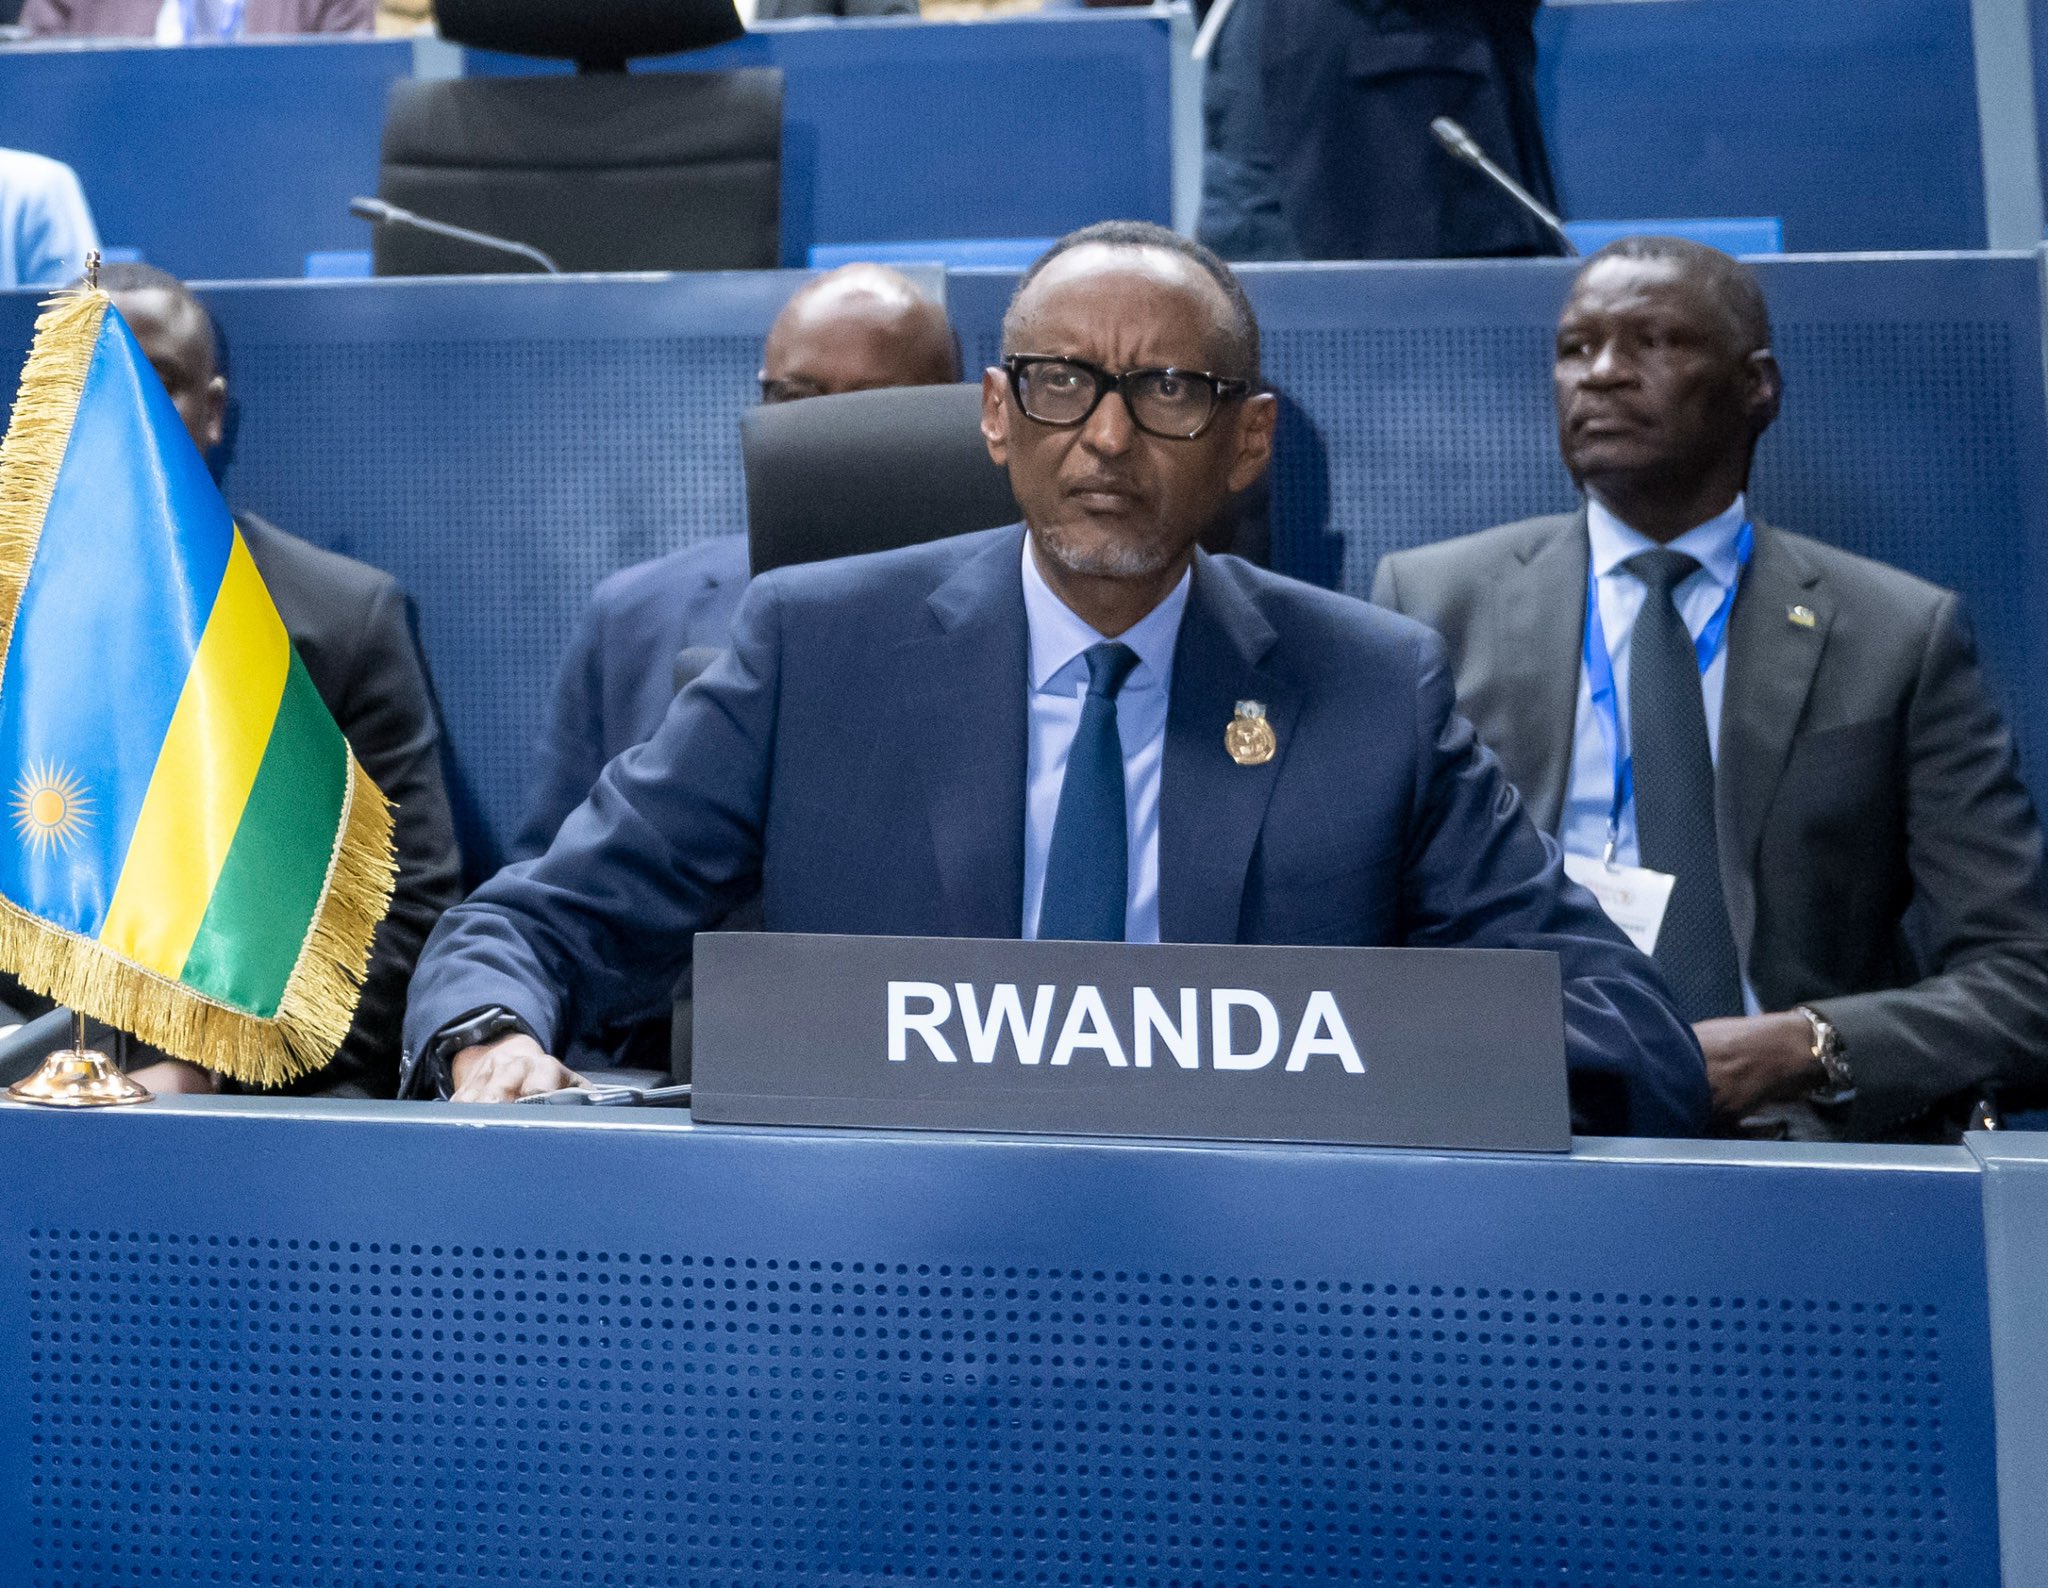 Rwanda
